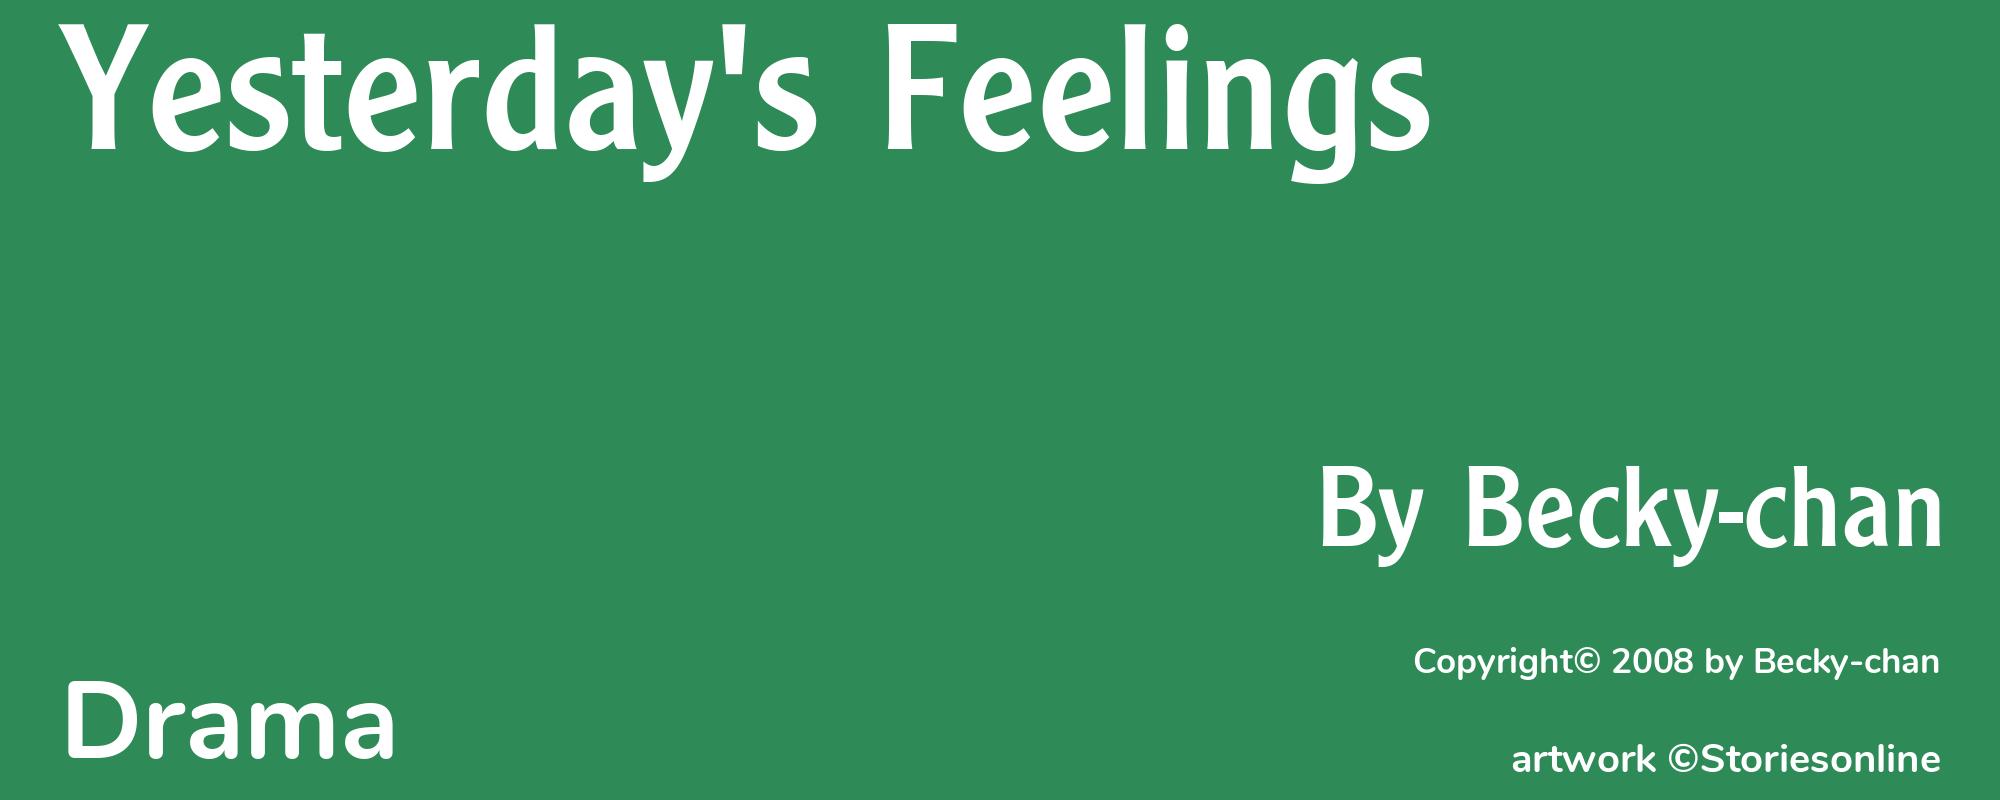 Yesterday's Feelings - Cover